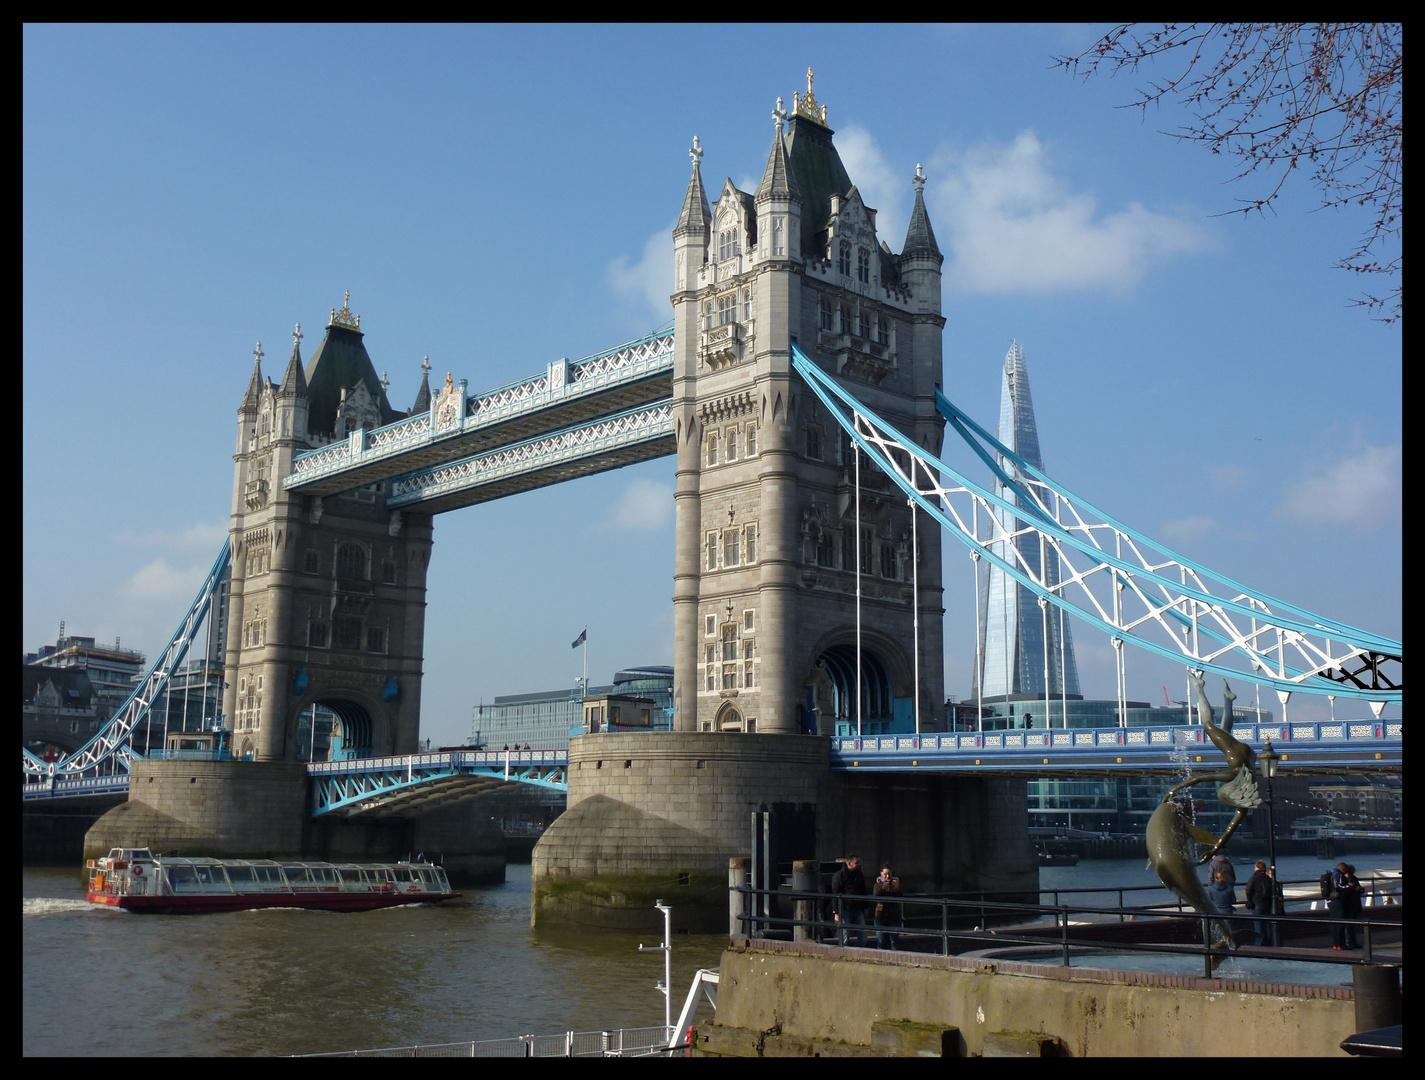 The Tower Bridge #1